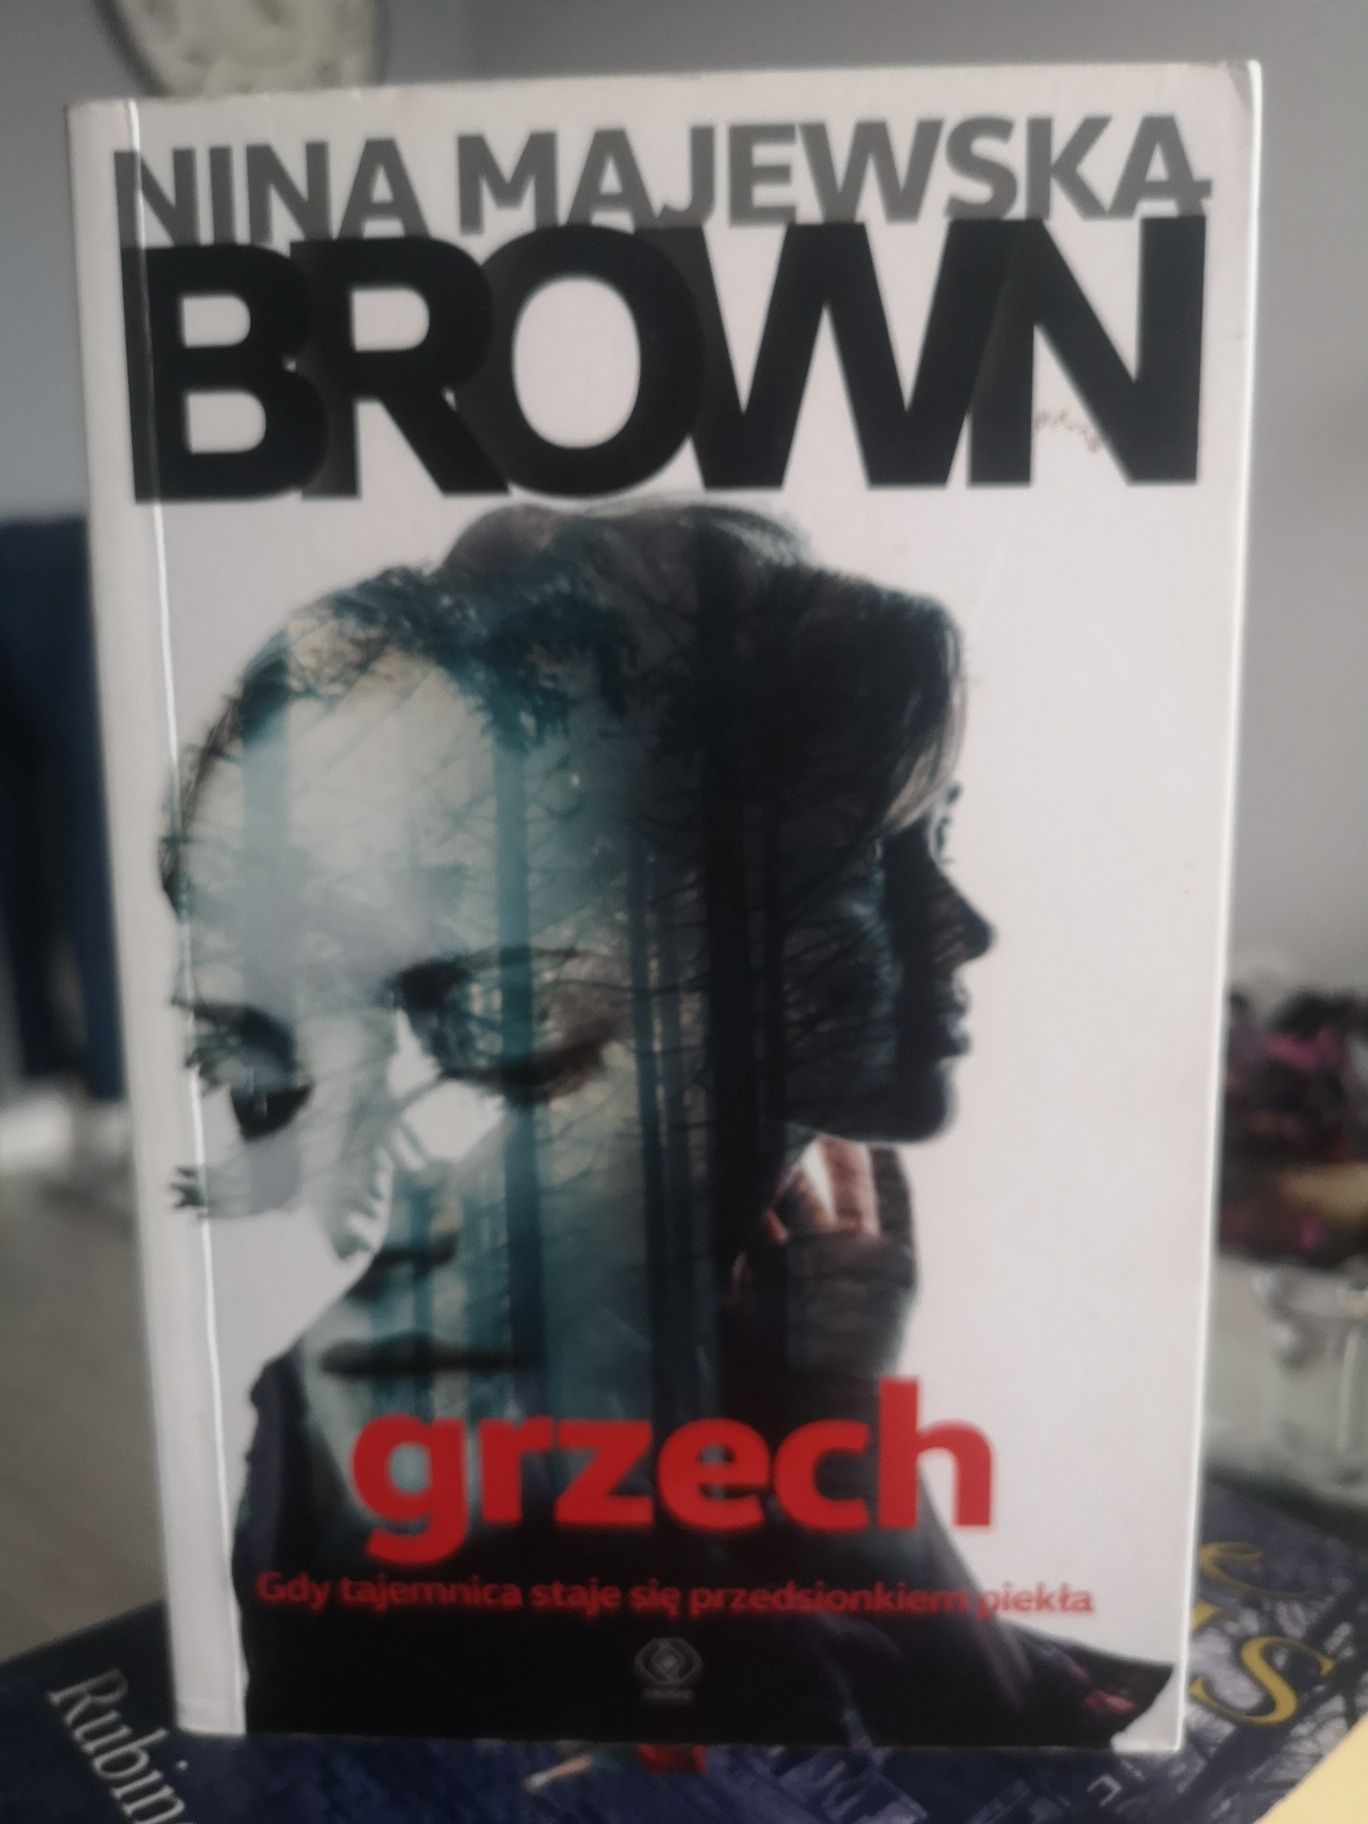 Nina Majewska Brown - Grzech